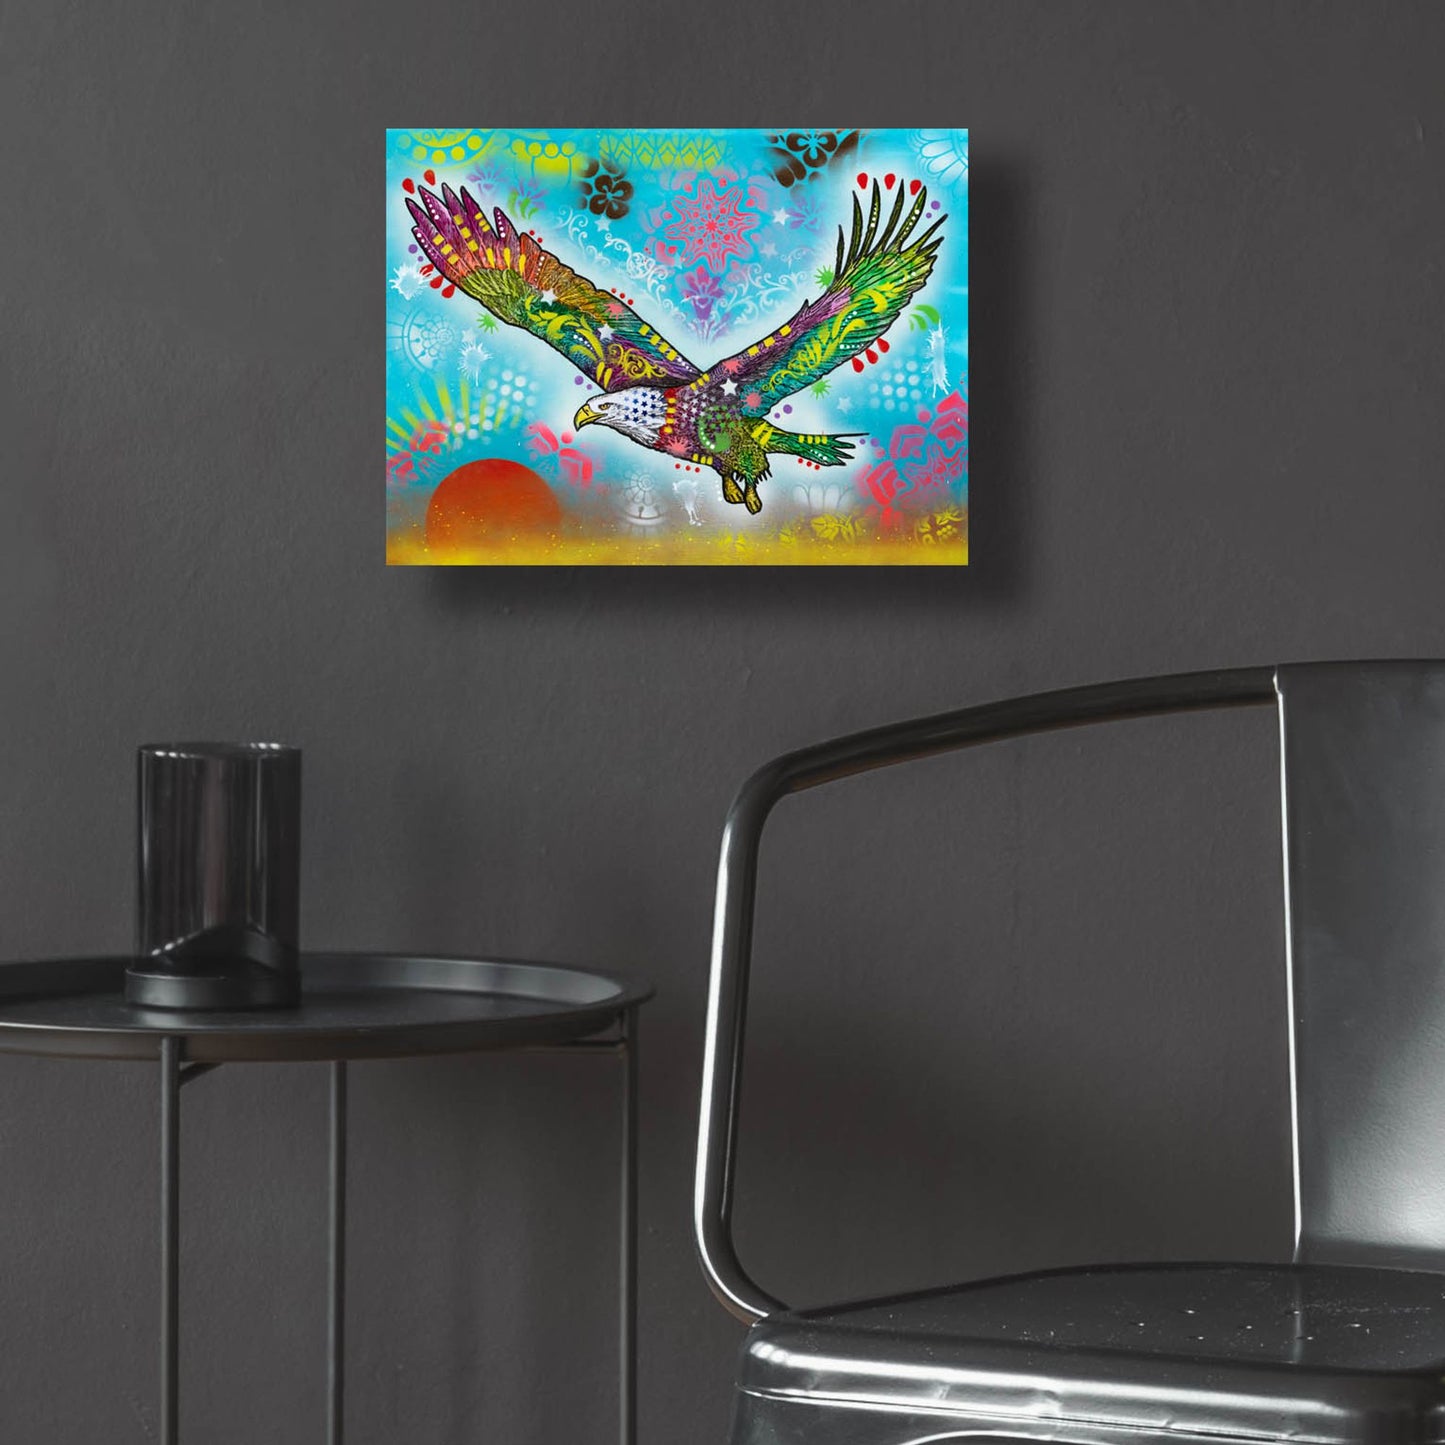 Epic Art 'In Flight' by Dean Russo, Acrylic Glass Wall Art,16x12